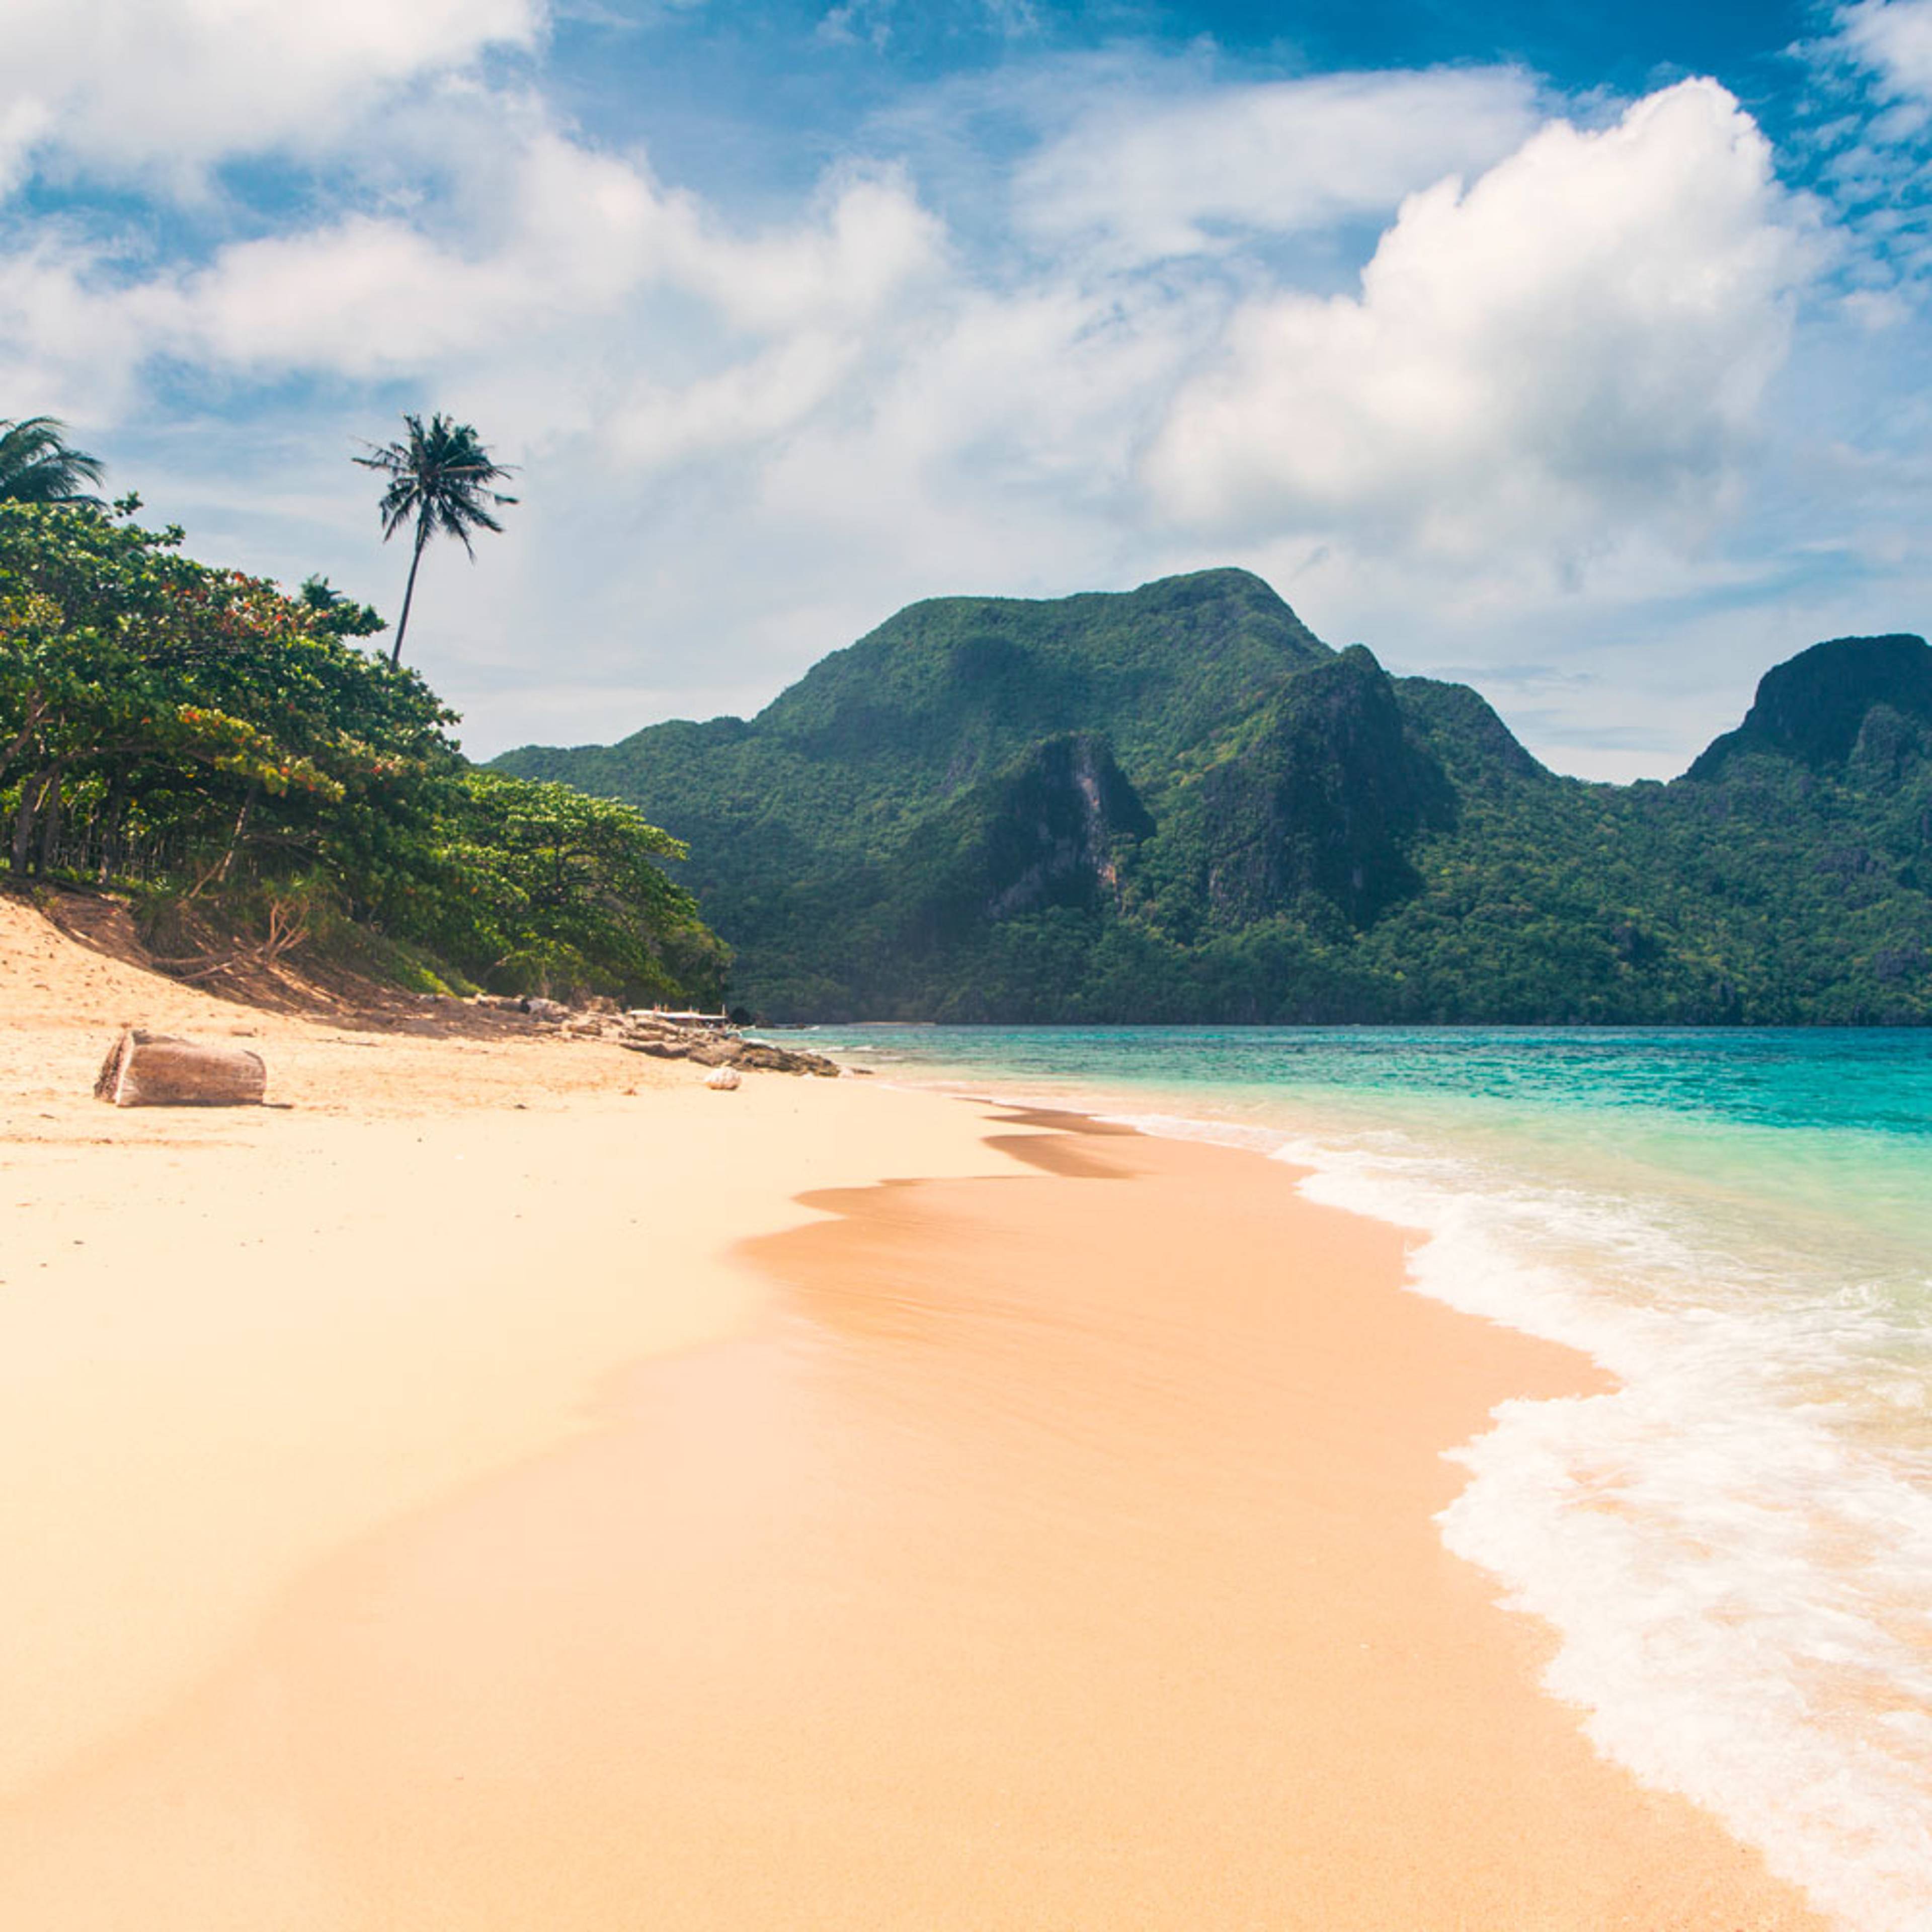 Découvrez les plus belles plages lors de votre voyage aux Philippines 100% sur mesure